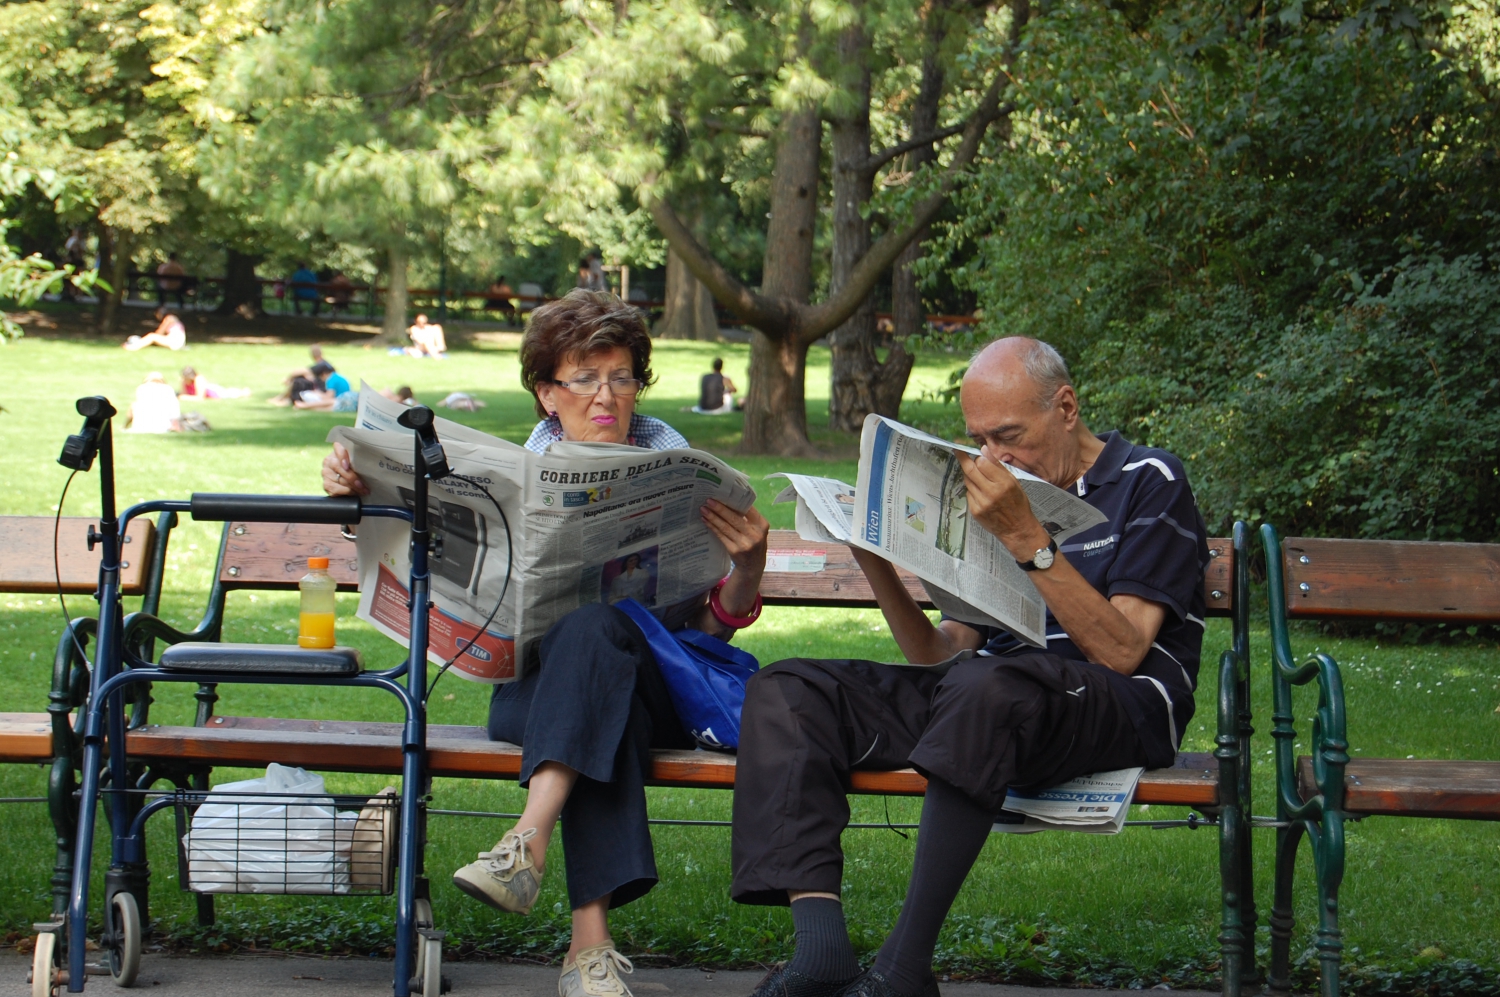 Újság – A parkokban, de főleg a kávézókban sűrűn látni még olyanokat, akik nyomtatott újságot olvasnak. És ha valakinek valamilyen mozgáskorlátozottsága van: Bécs erősen akadálymentesített, a közlekedés tehát nem jelent különösebb gondot. (park, Bécs) - (Fotó: Laslavic Tímea)